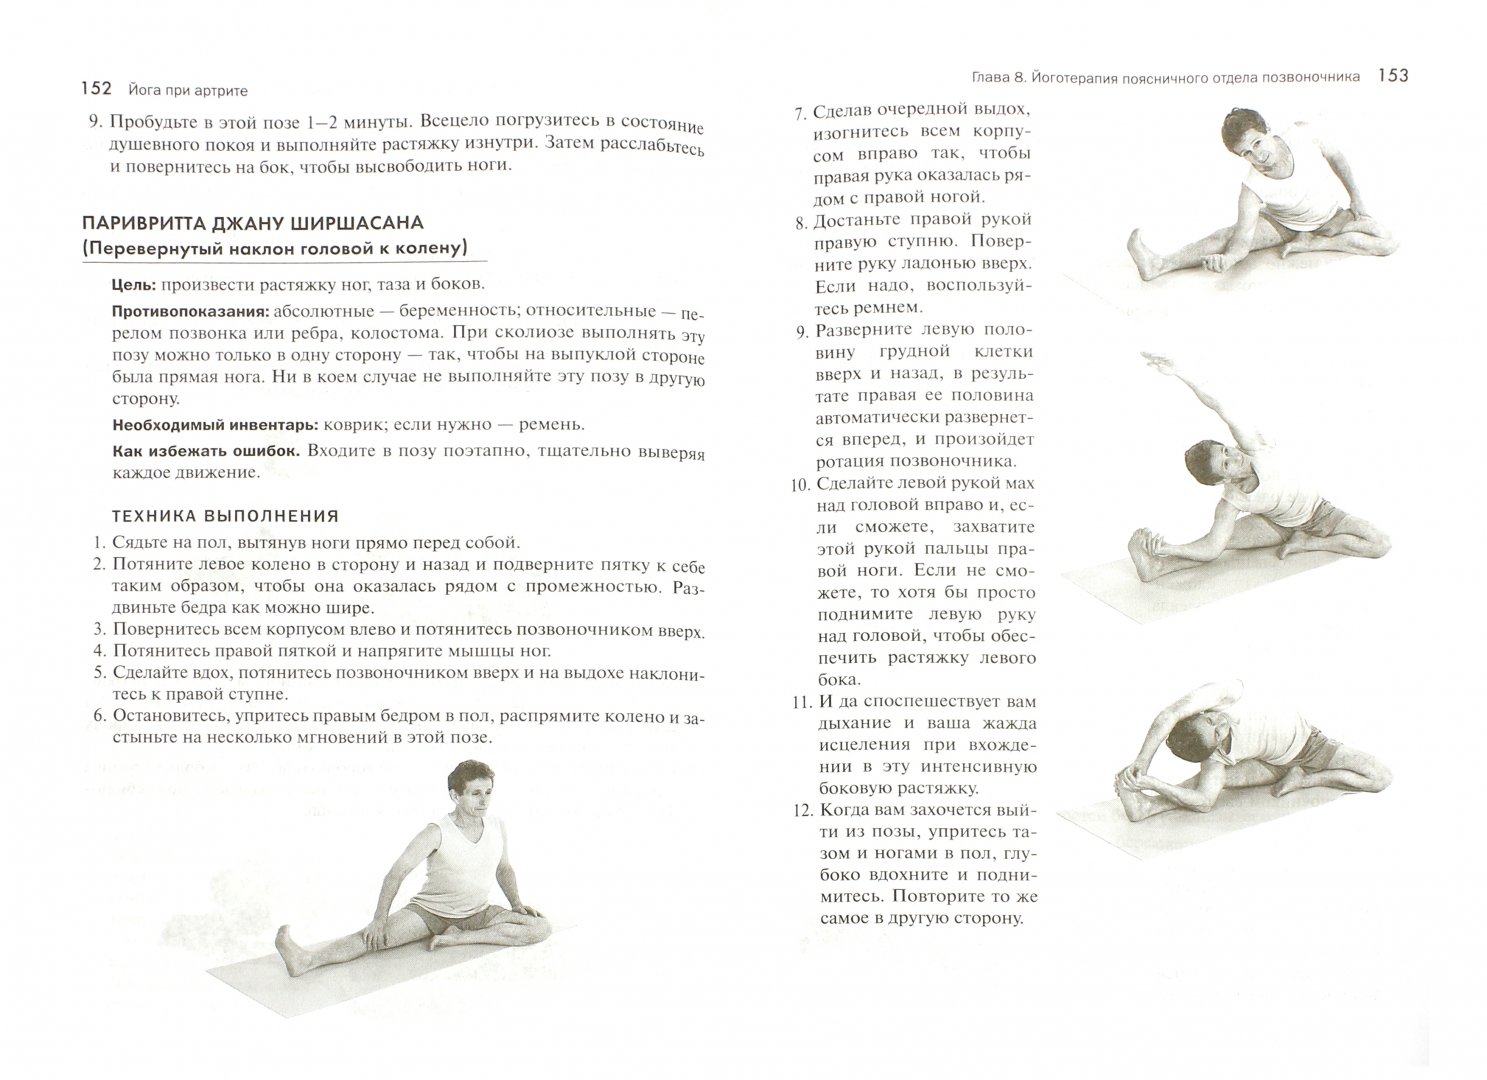 Иллюстрация 1 из 16 для Йога при артрите - Фишмен, Солтонстолл | Лабиринт - книги. Источник: Лабиринт